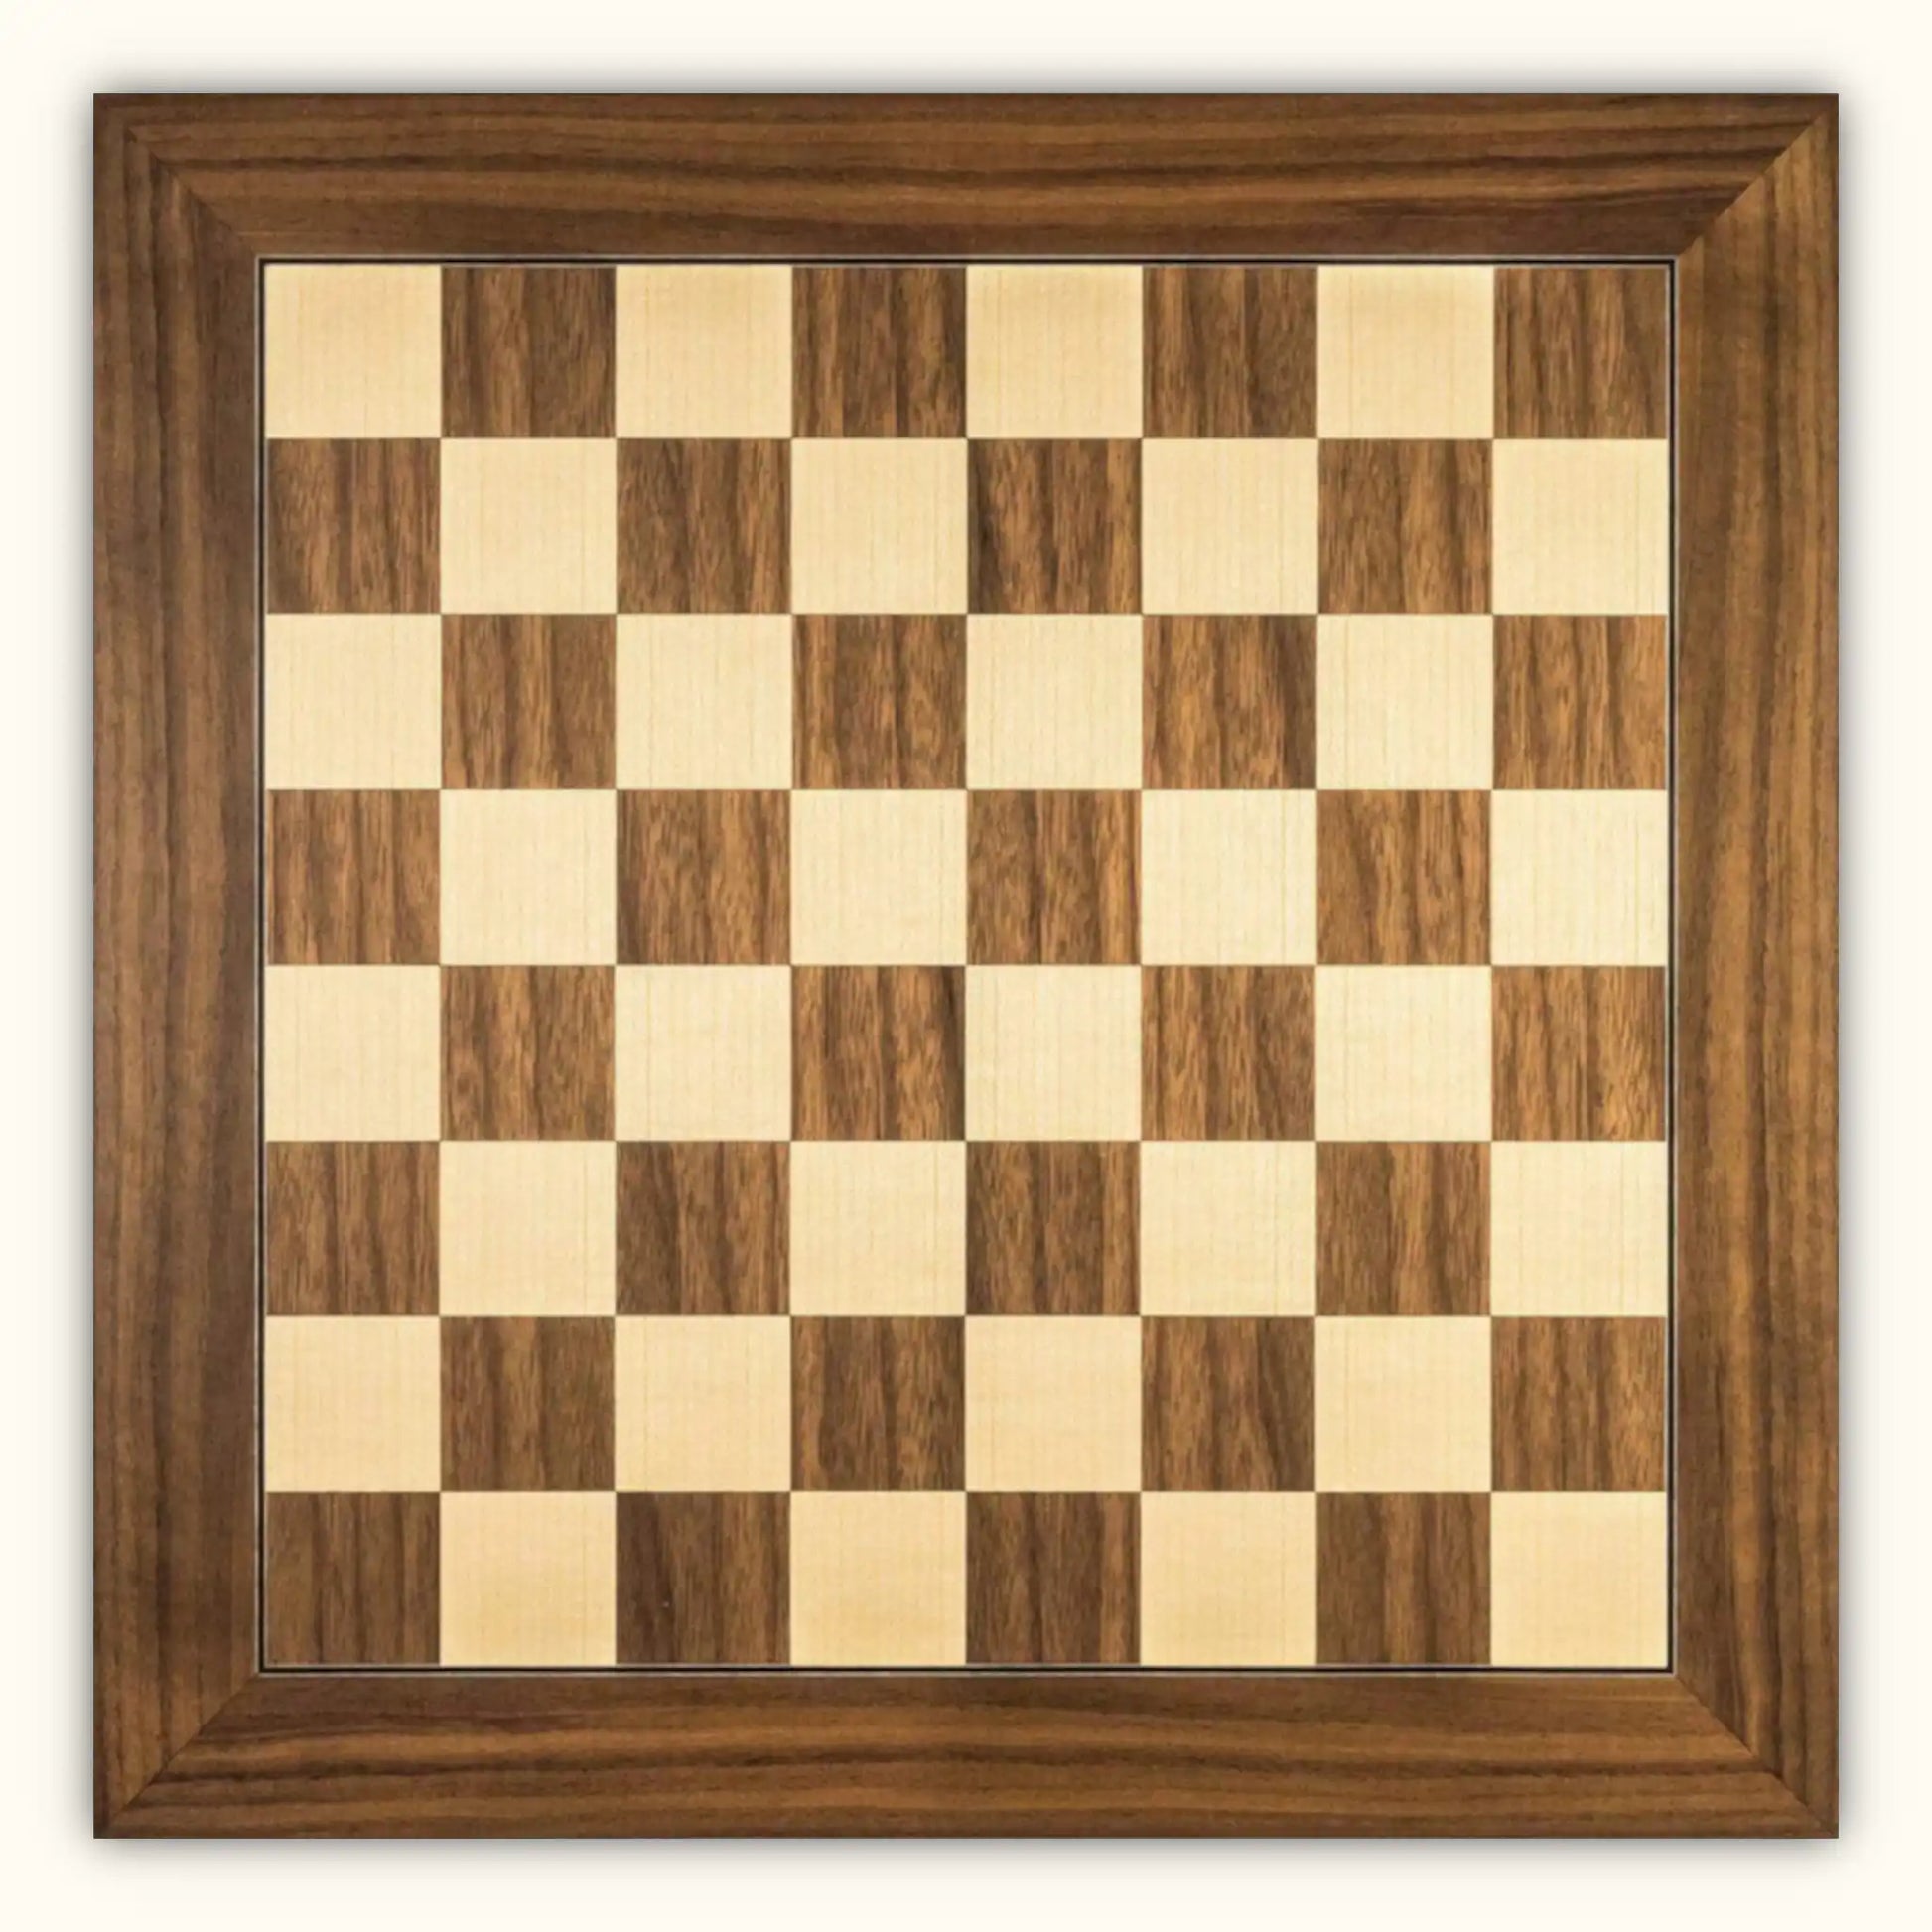 Chessboard walnut deluxe 55 mm